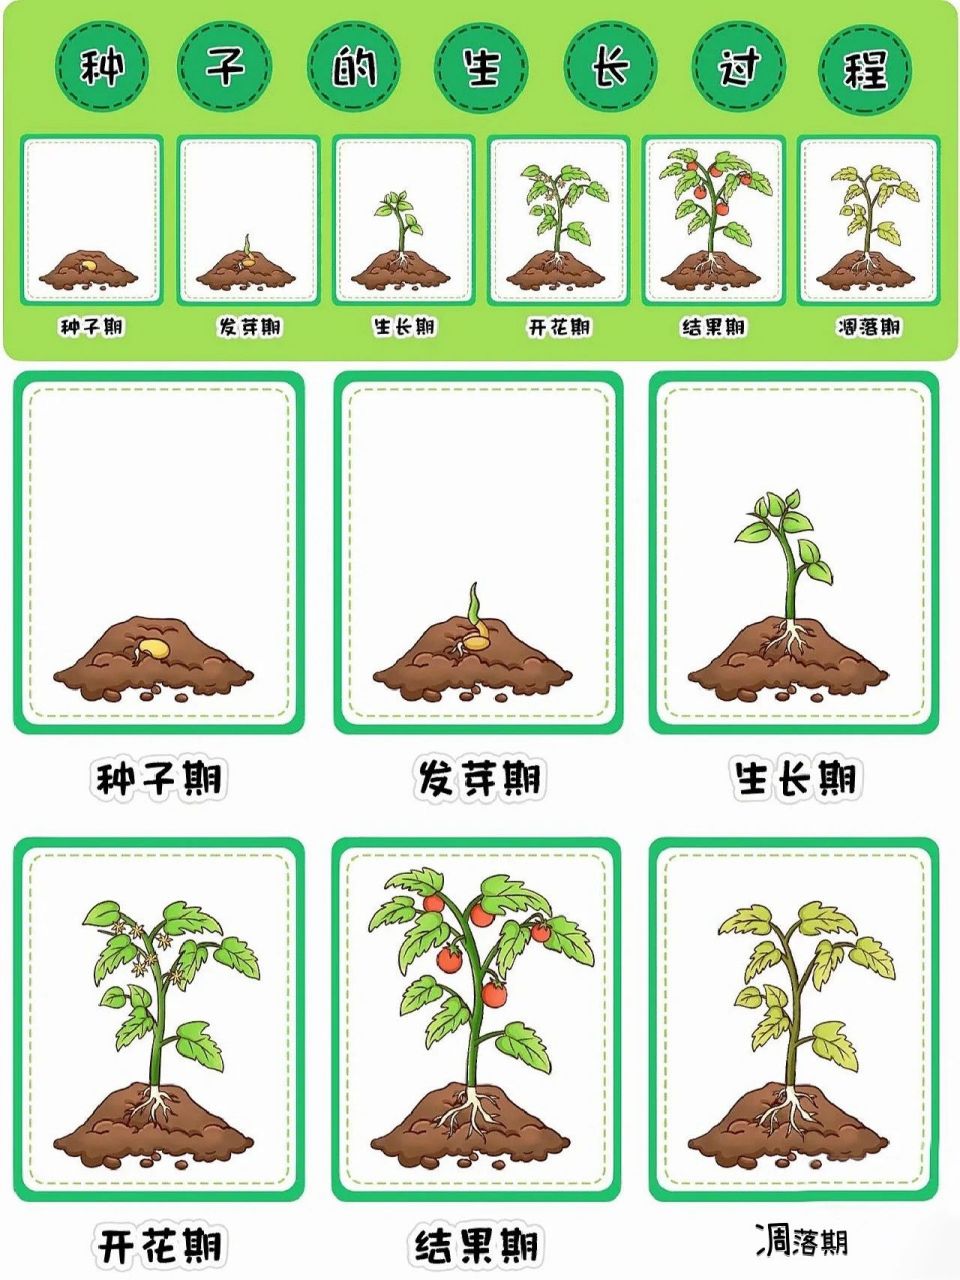 种子发芽6过程图片